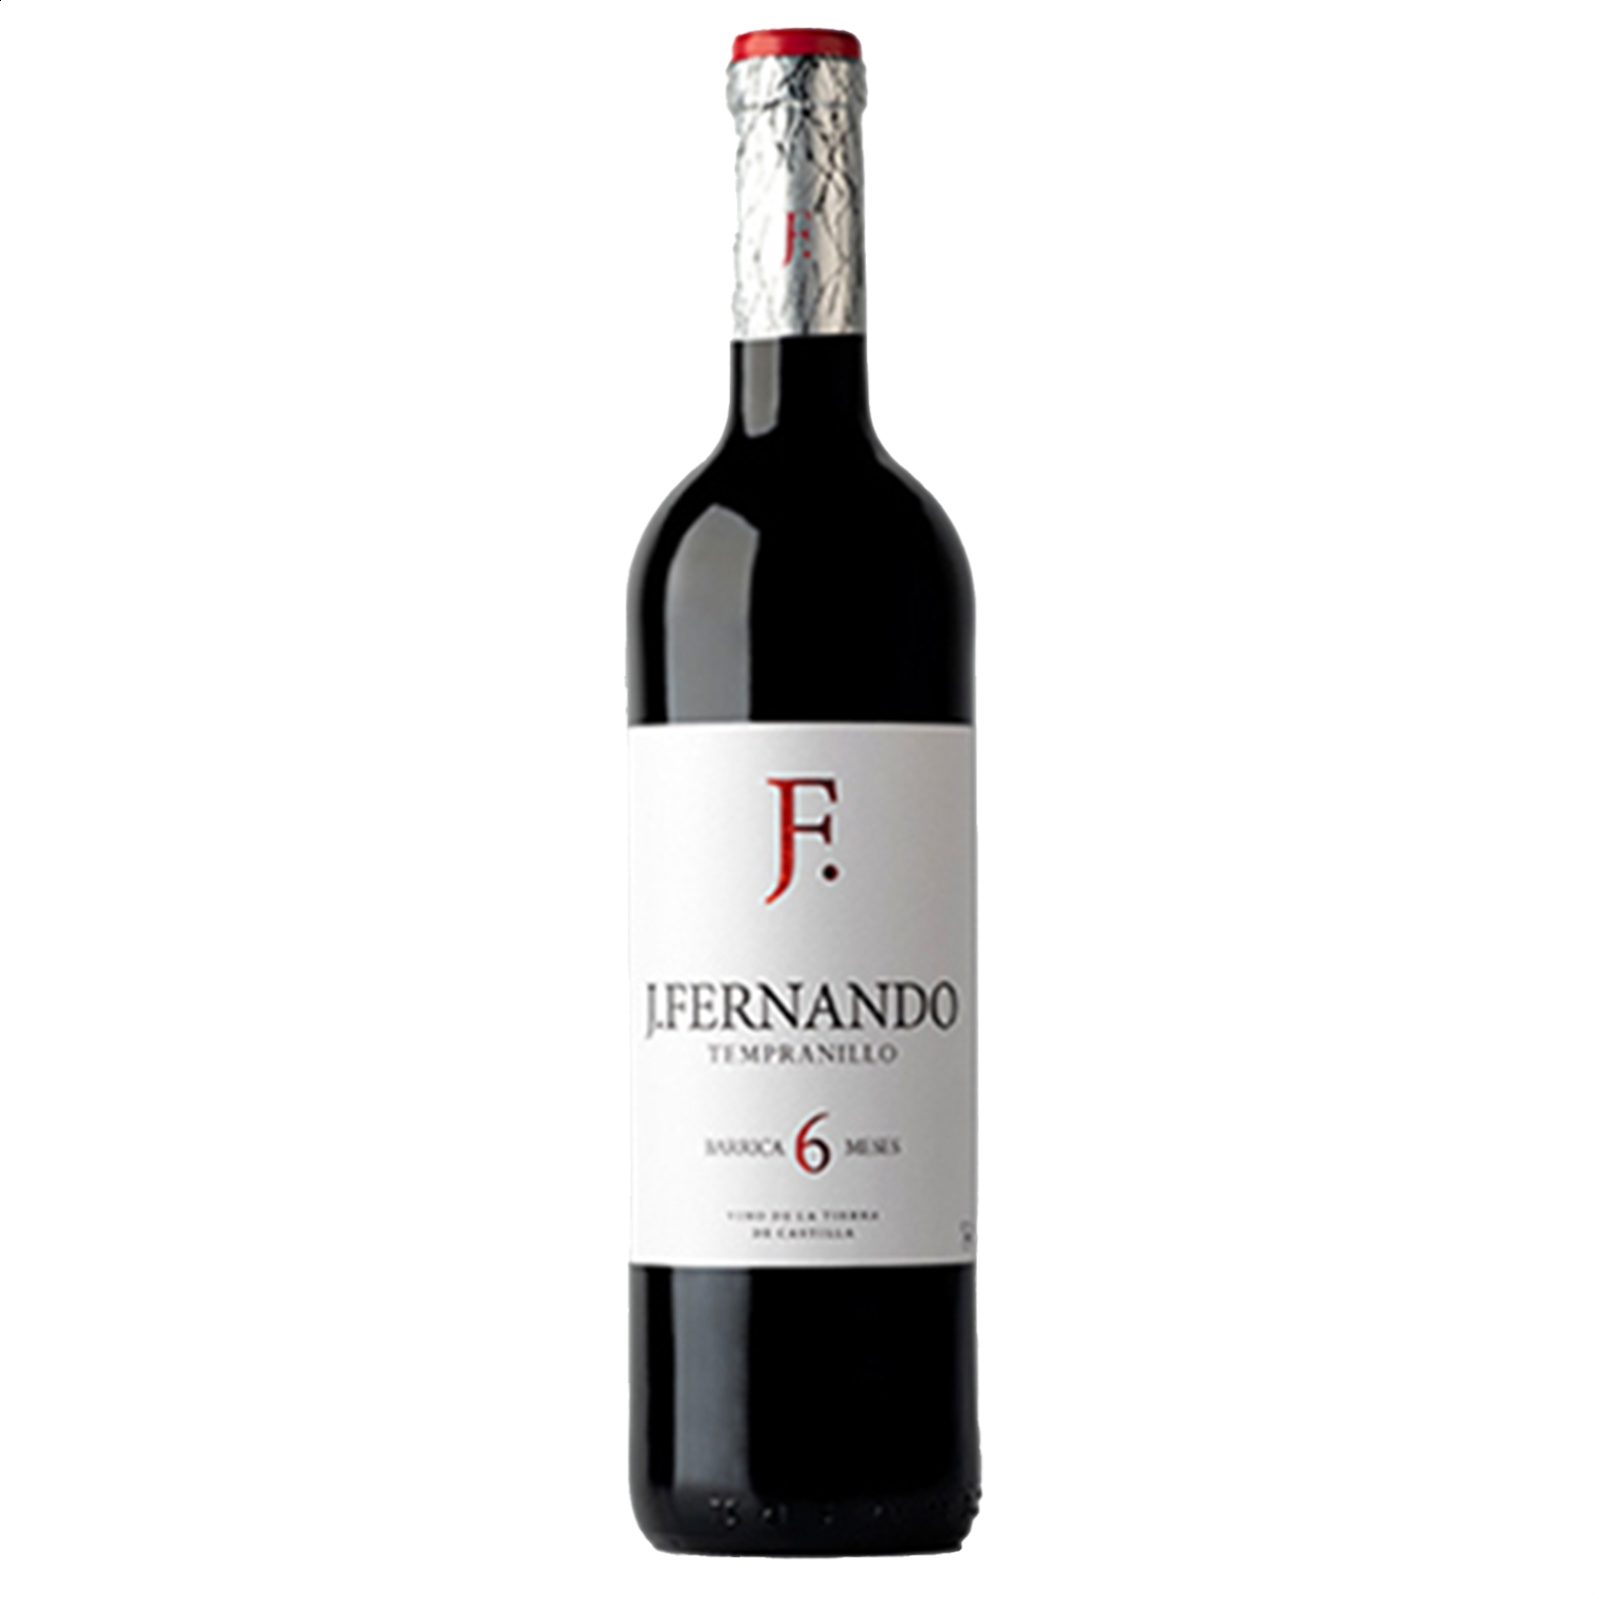 Finca Venta de Don Quijote - Bodegas VQ - Vino tinto J. Fernando IGP Vino de la Tierra de Castilla 75cl, 6uds